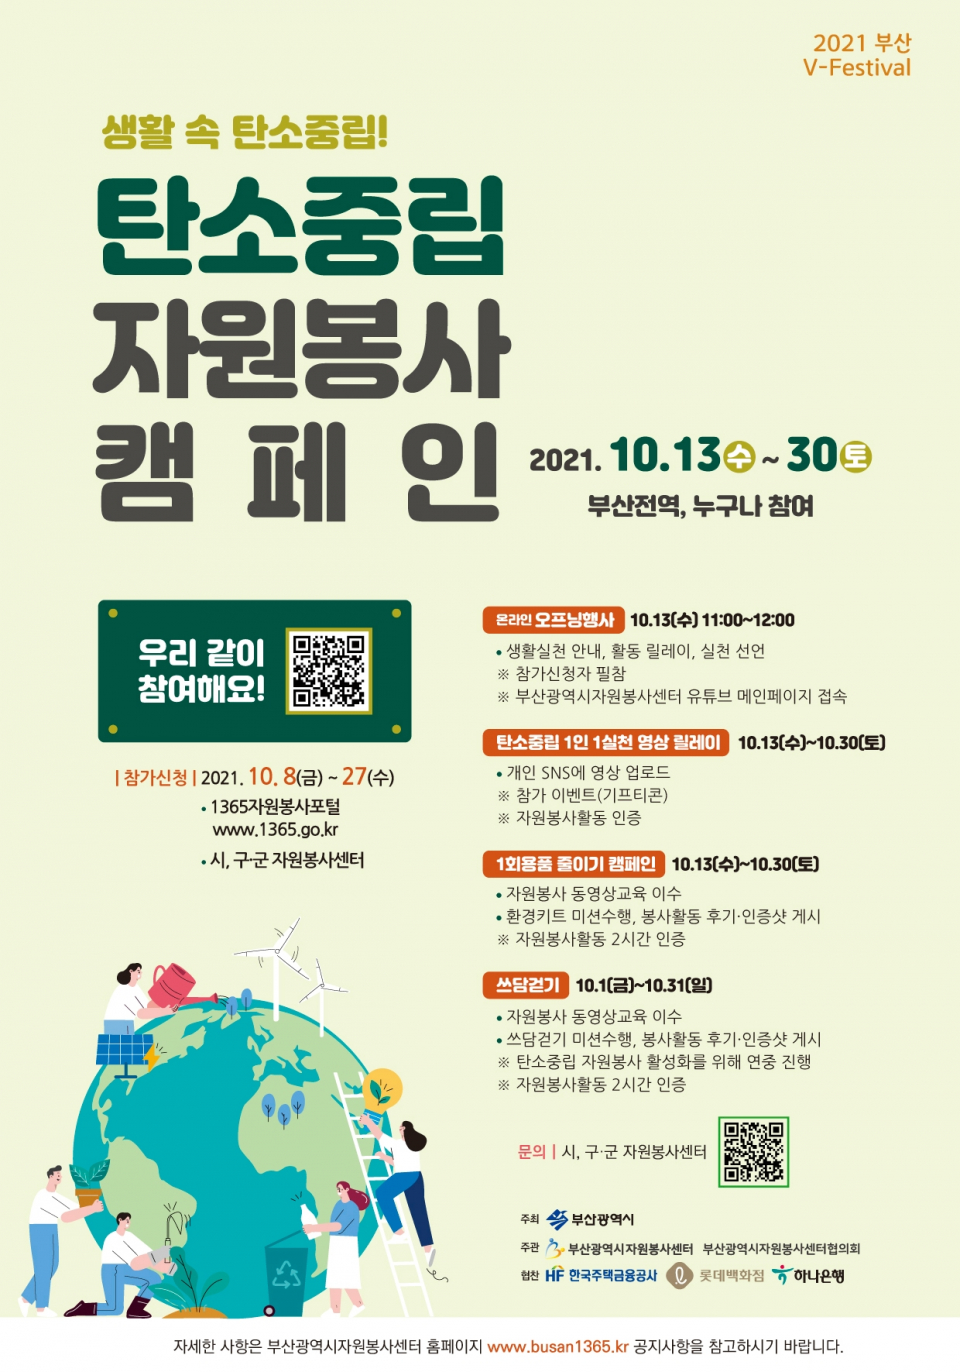 탄소중립 자원봉사 캠페인(2021부산V-Festival) 참가안내 홍보